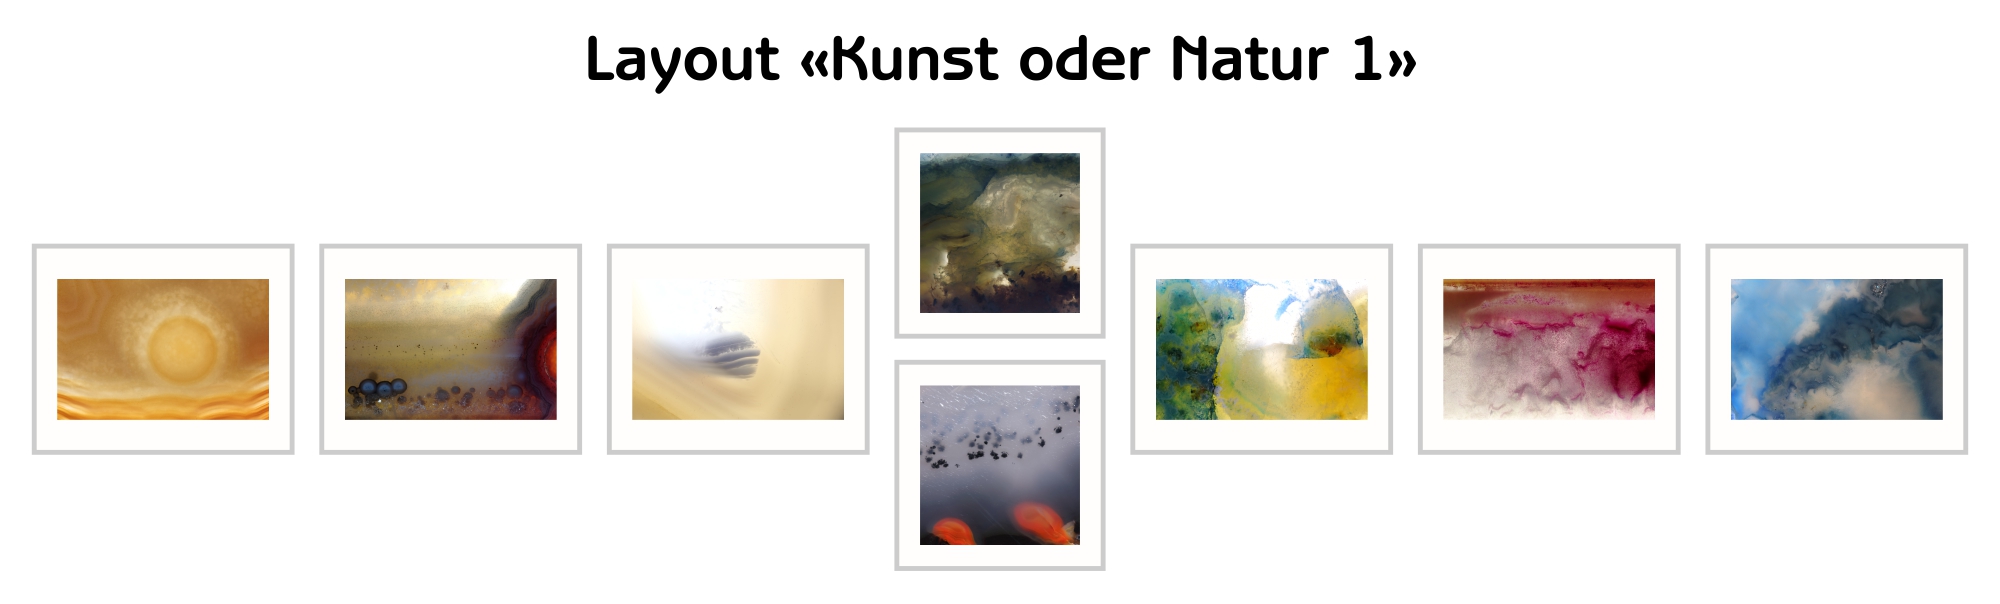 image-10217768-Layout-Kunst-oder-Natur-1-45c48.jpg